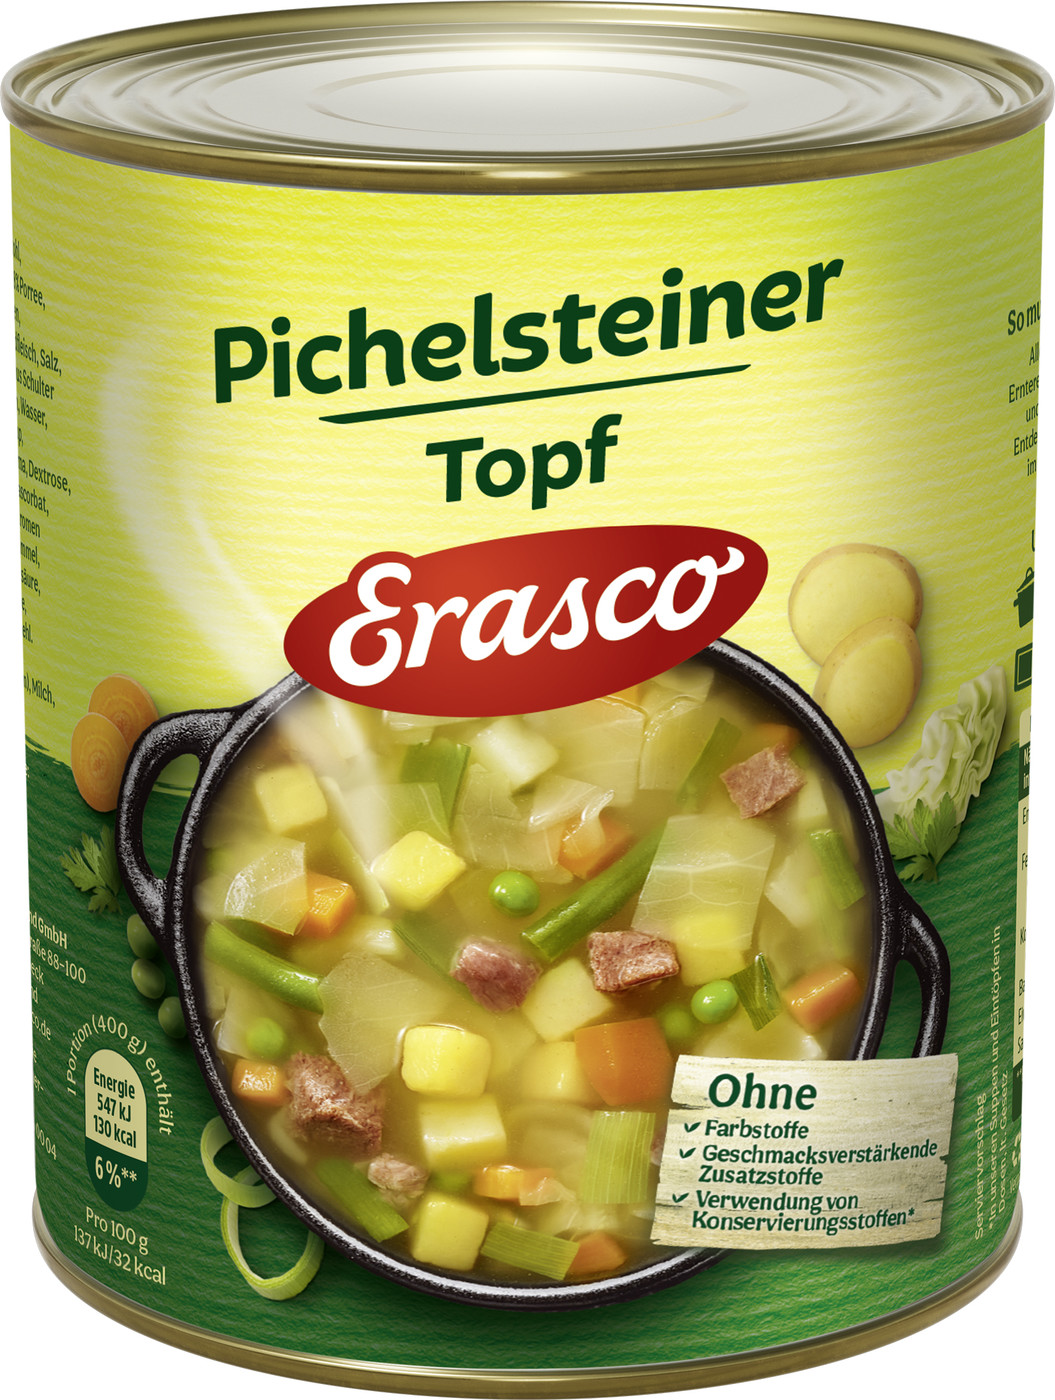 Erasco Pichelsteiner Topf 800G